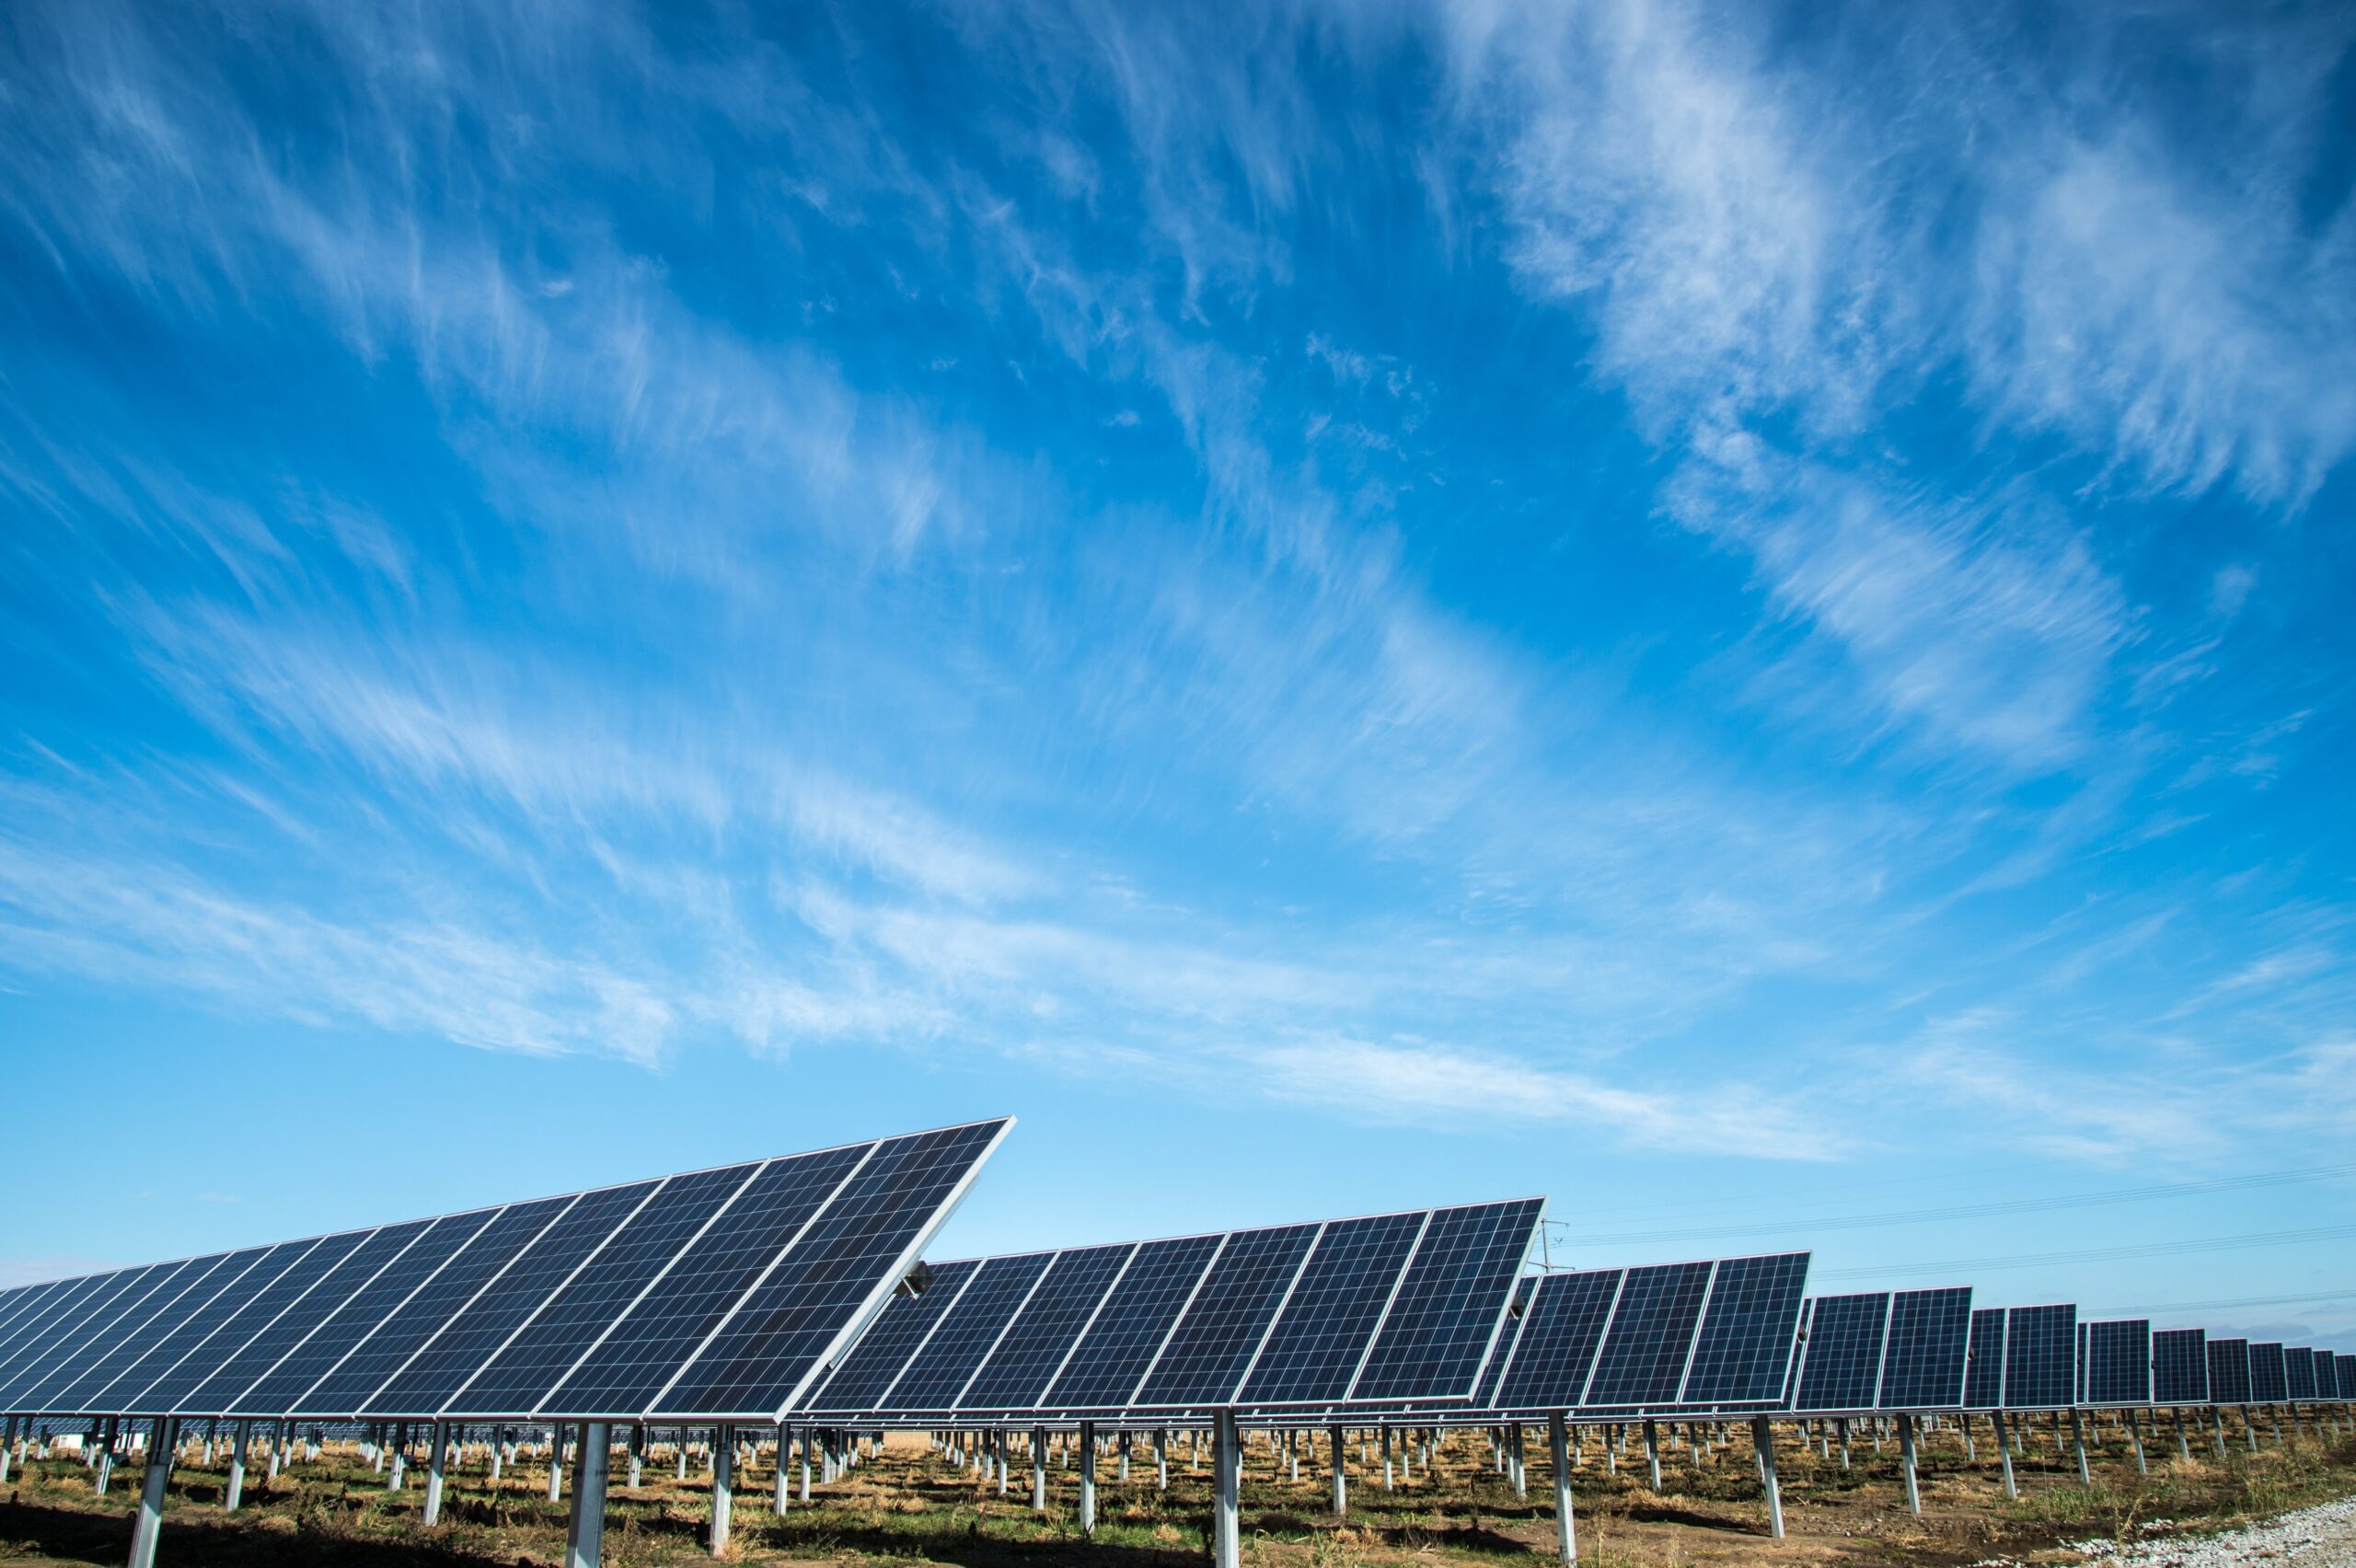 A solar panel farm under an open sky